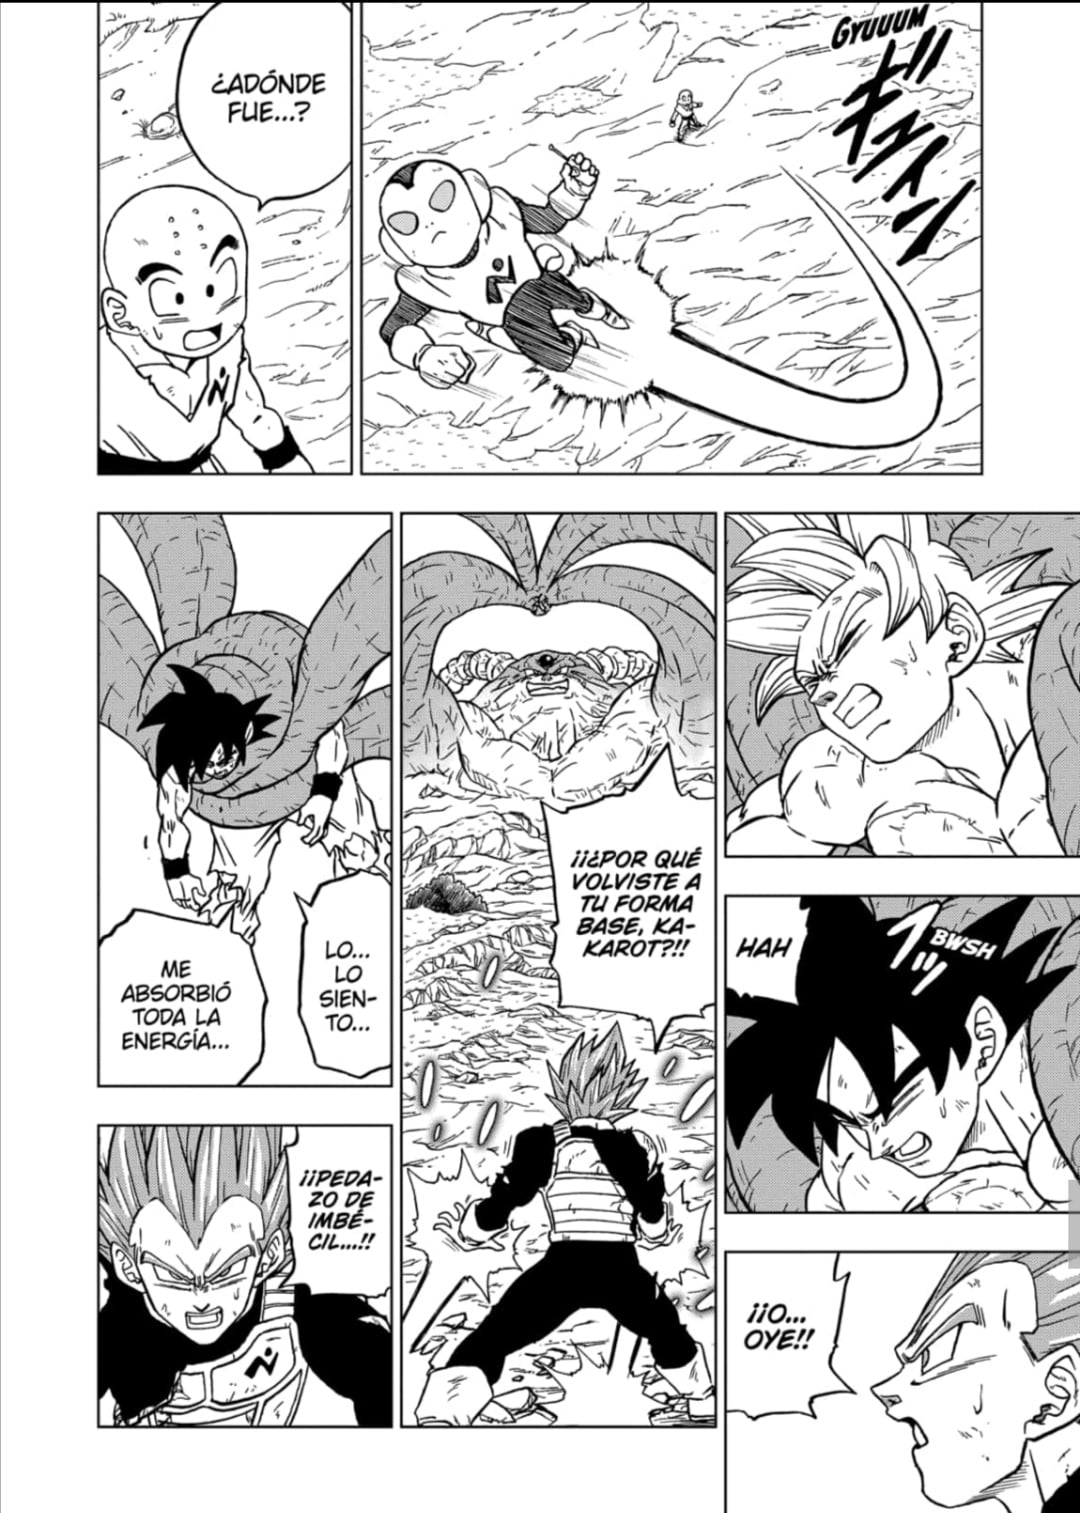 Backup Mangás - Goku Instinto Superior do Capìtulo 66 do Mangá de Dragon  Ball Super. Colorido por @JuniorToriyama